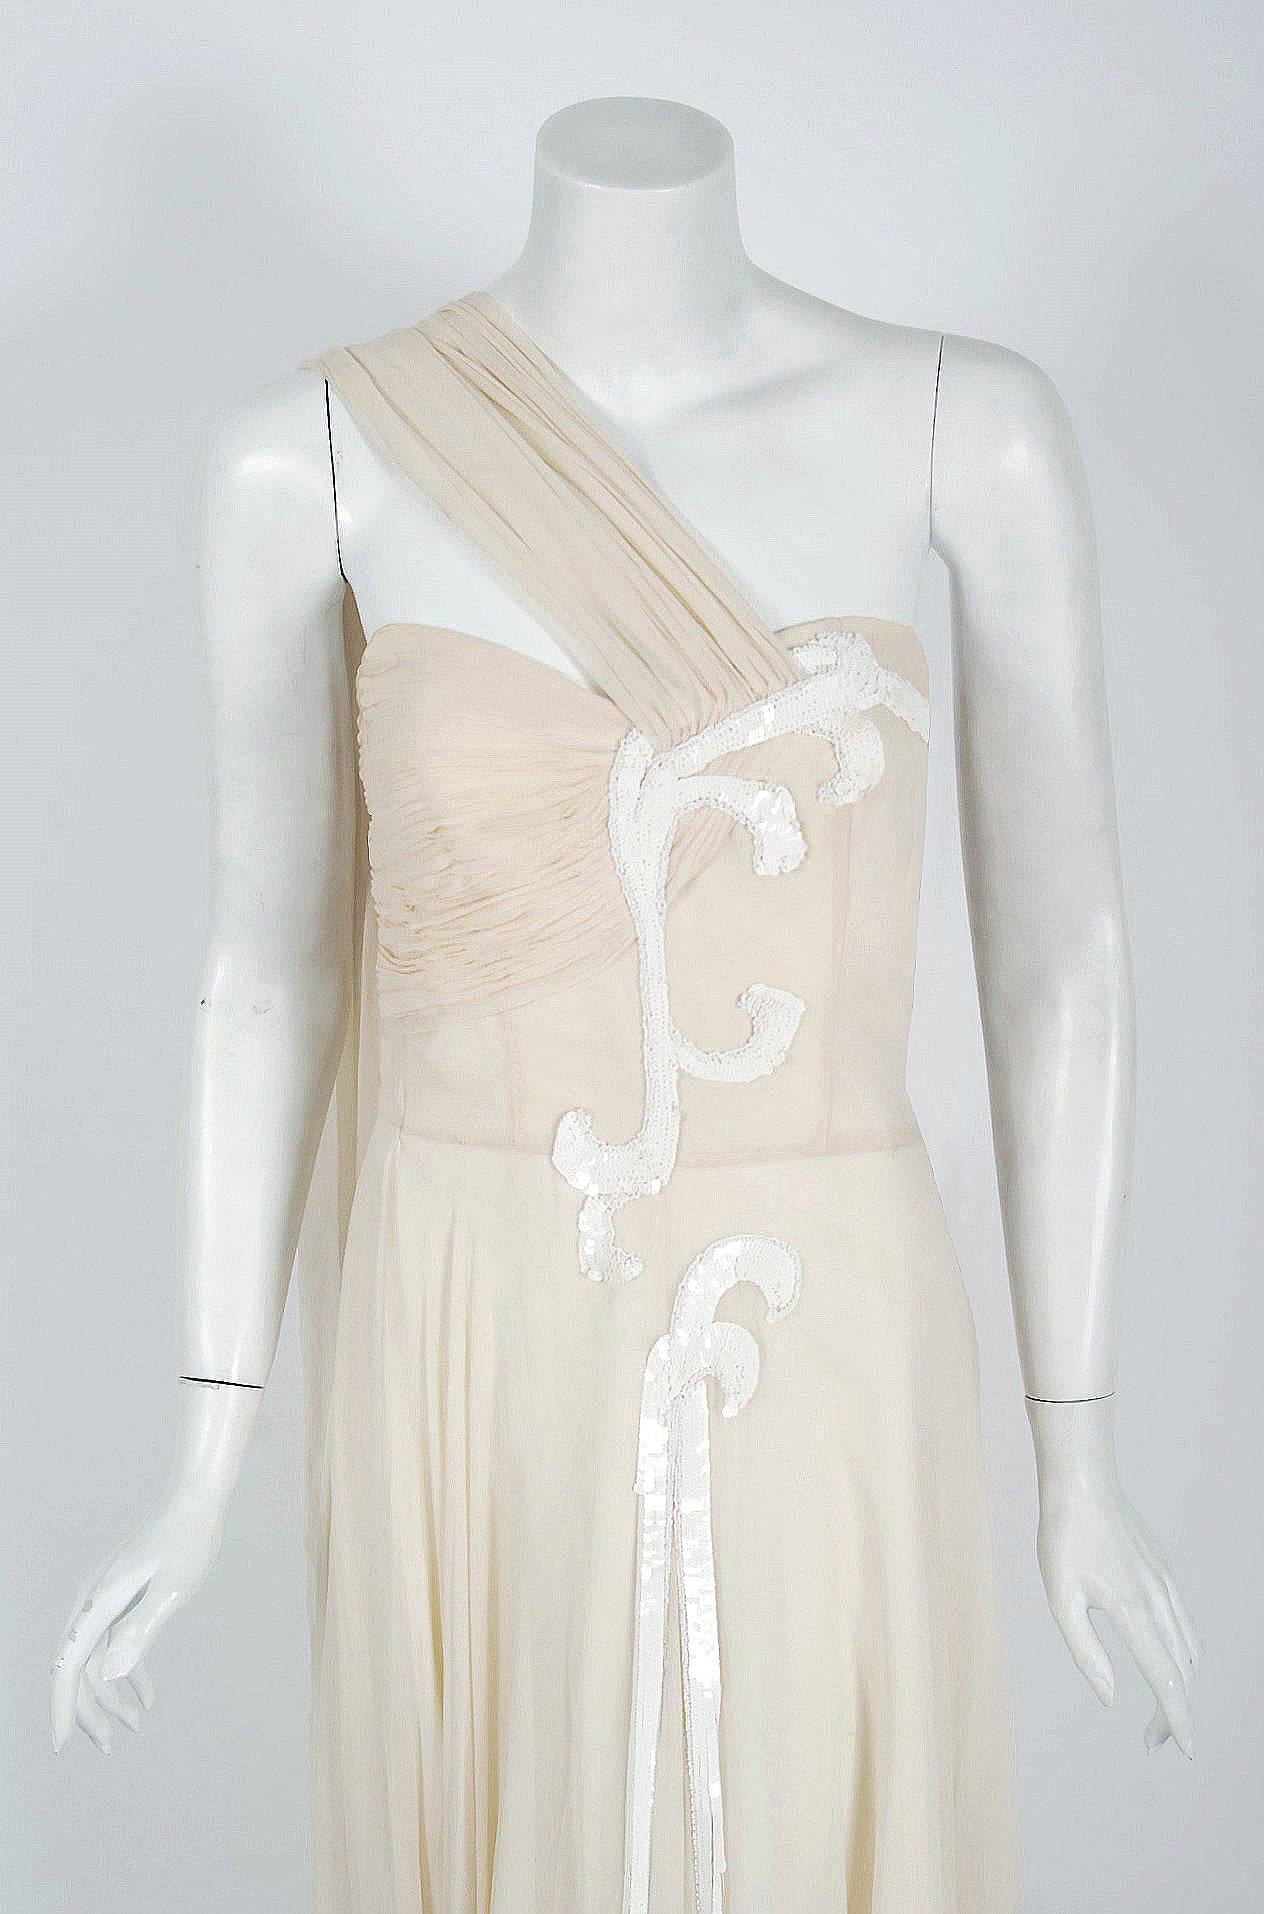 Ethérée robe de déesse crème de Saks Fifth Avenue de la fin des années 1940, datant de l'époque glamour du vieil Hollywood. Ce superbe vêtement en soie et en chiffon présente tant de détails couture que l'on devine qu'il a été confectionné avec un